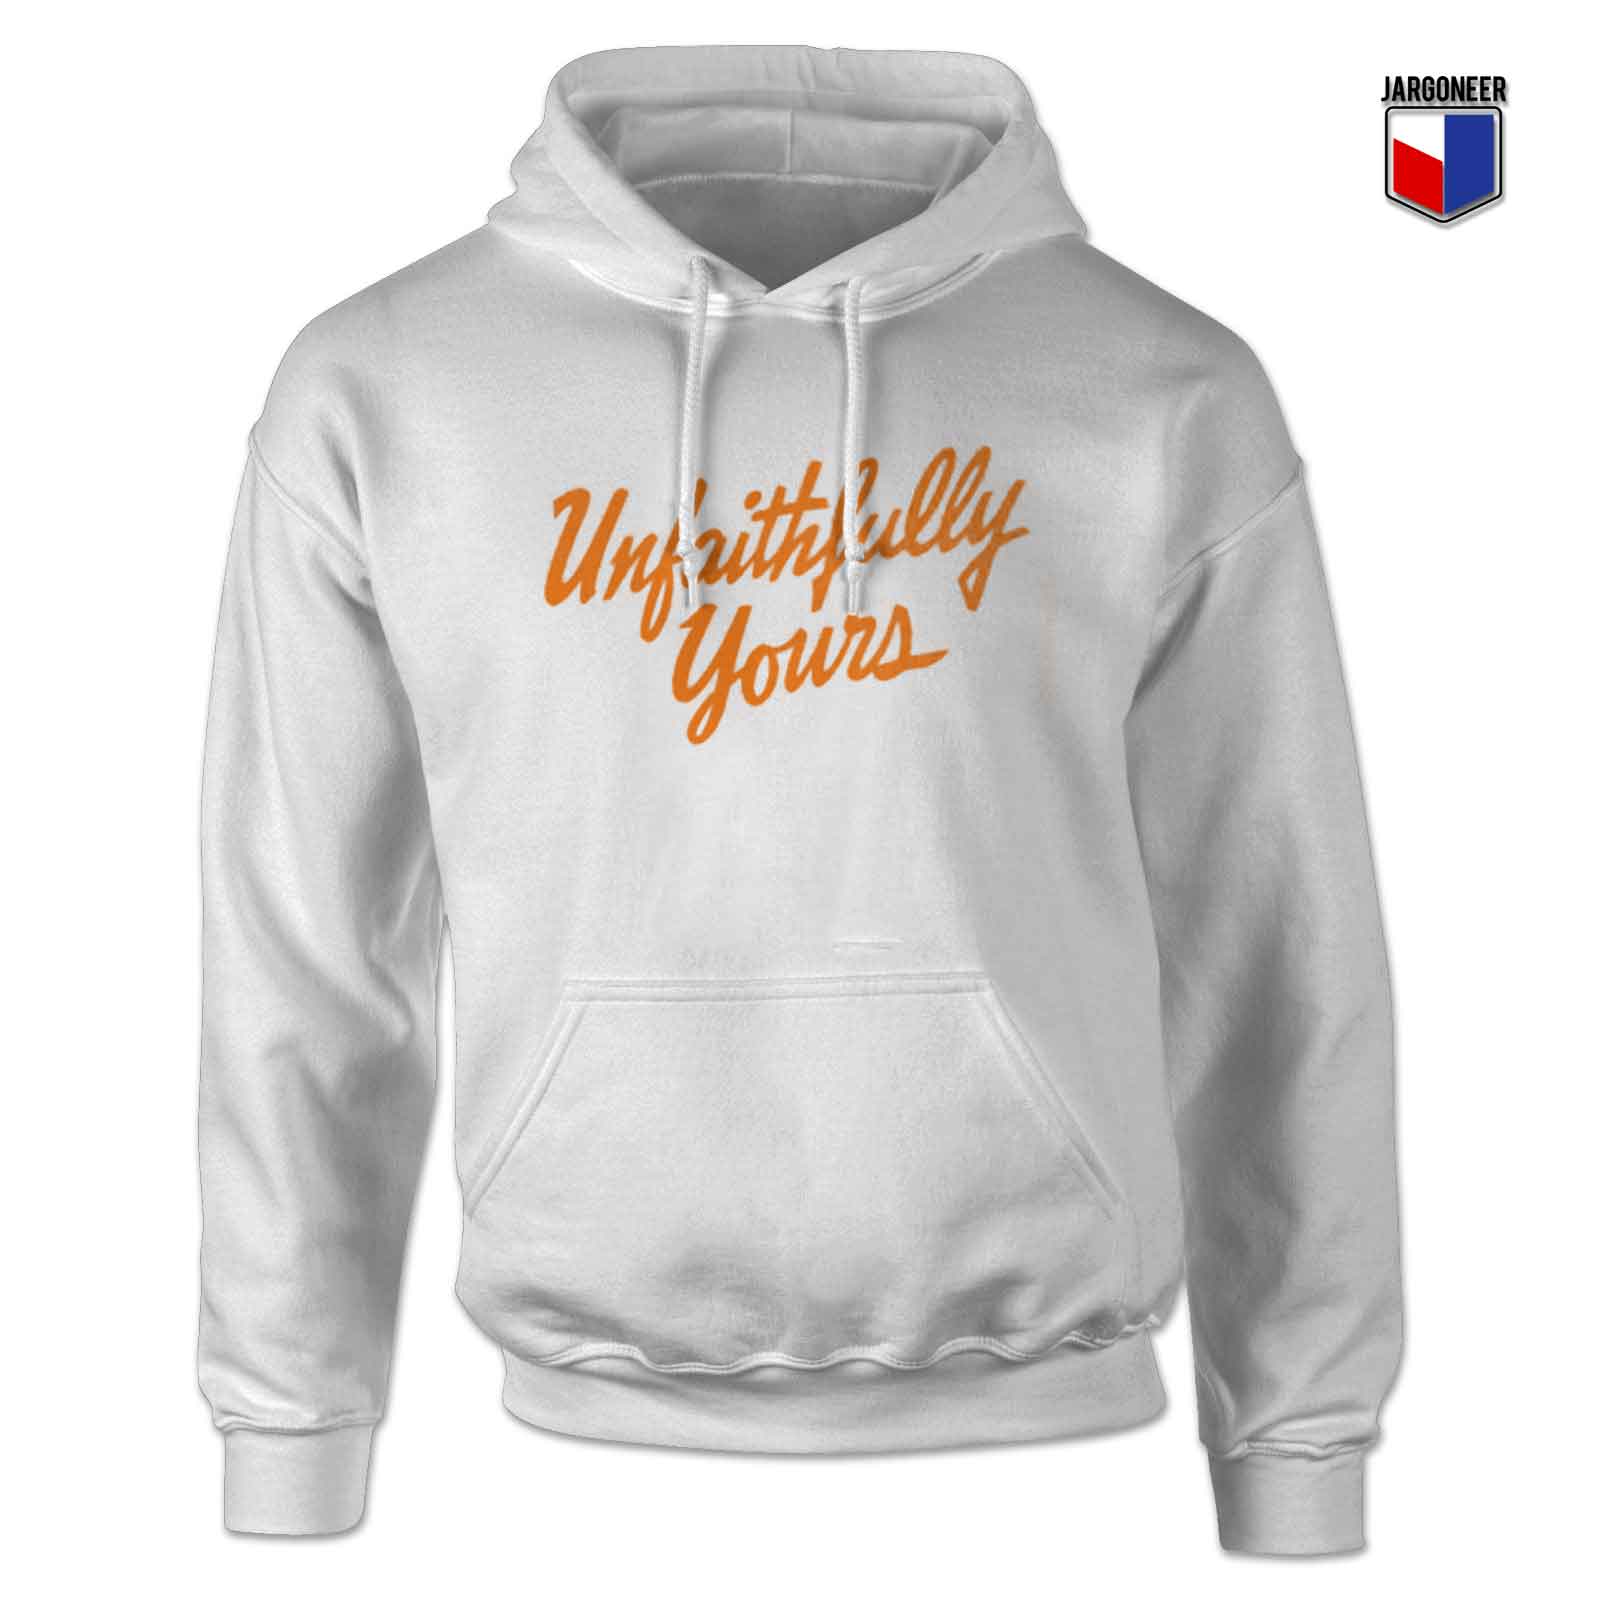 Unfaithfully Yours - Shop Unique Graphic Cool Shirt Designs